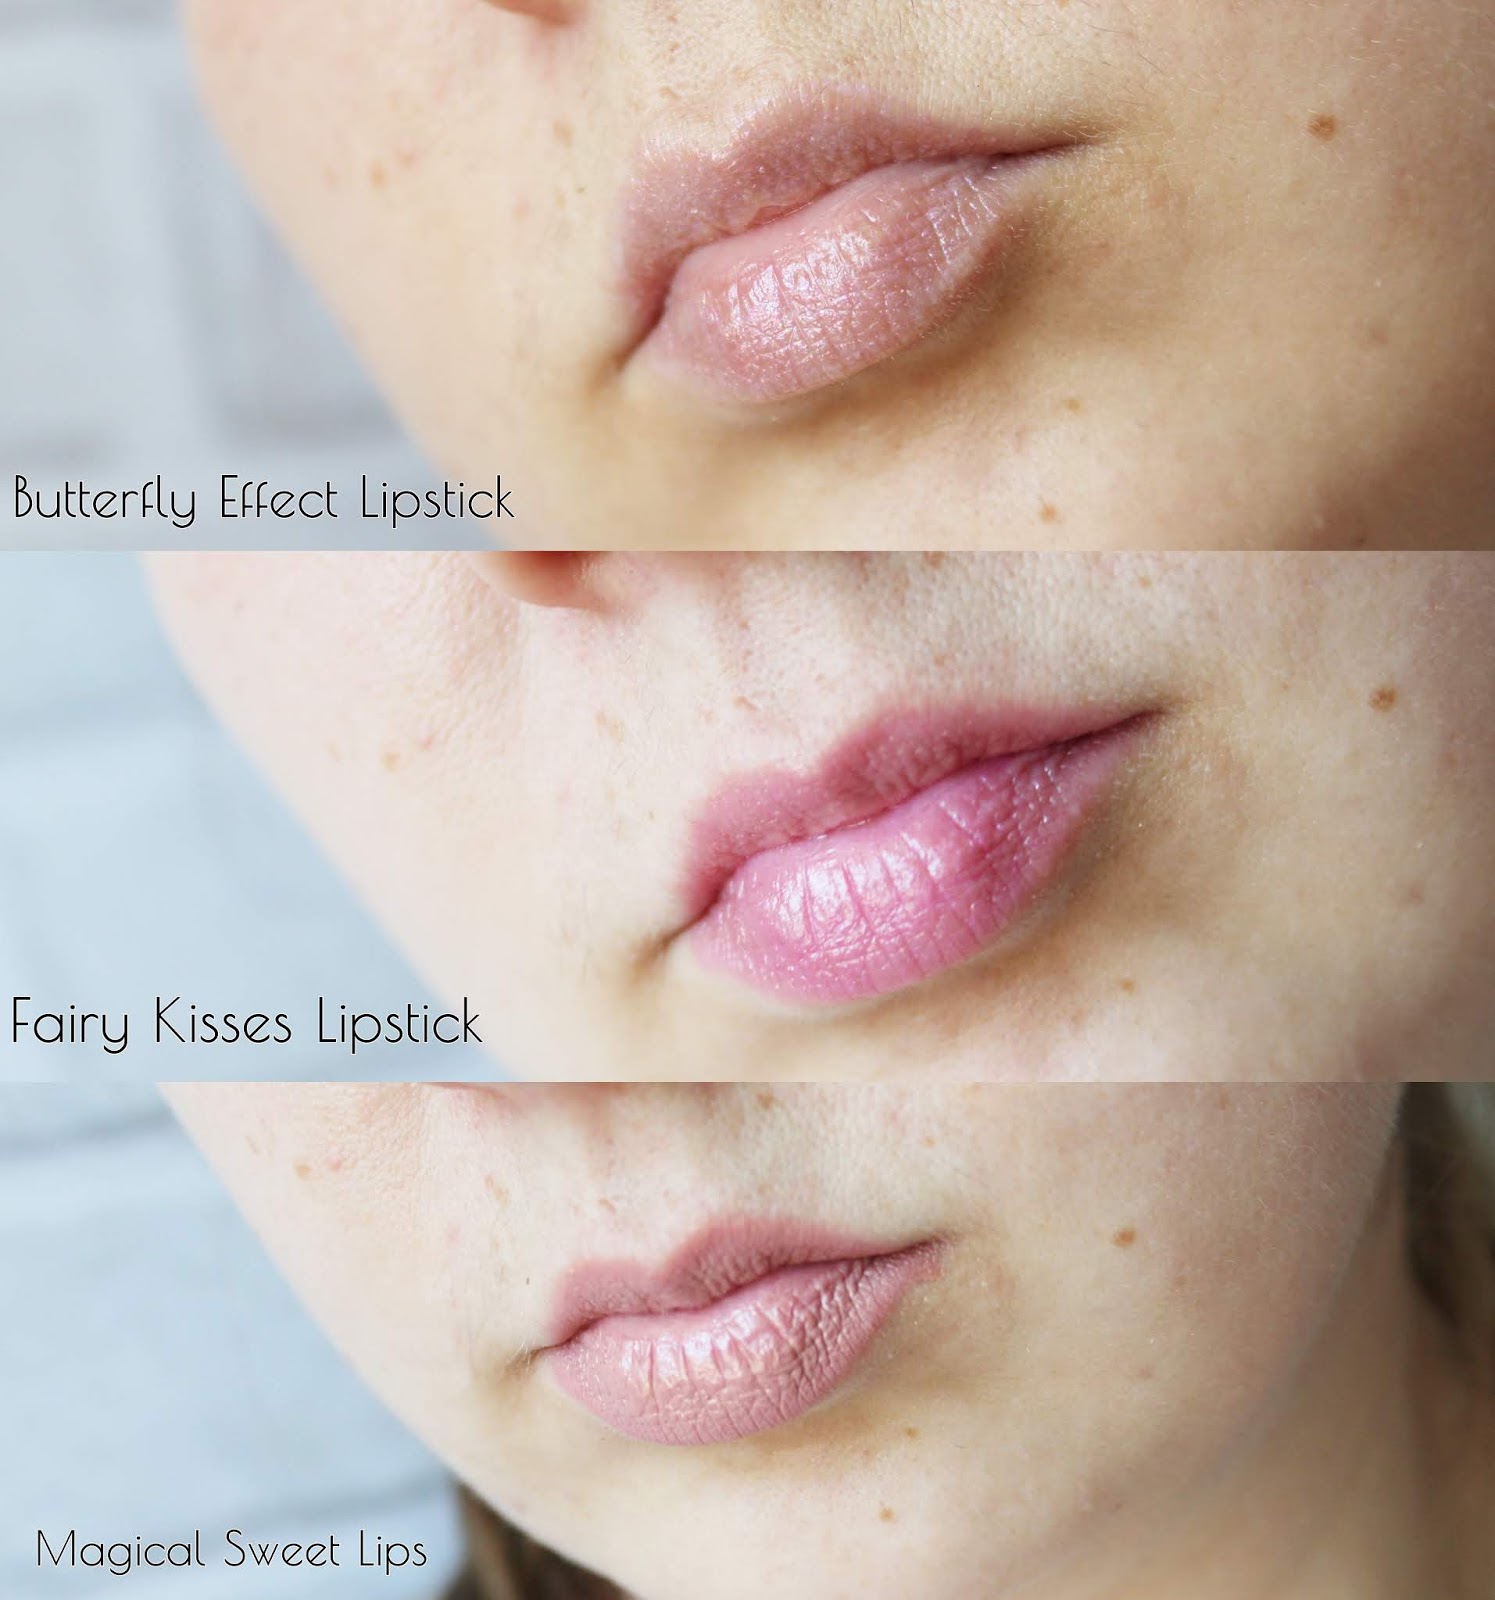 POMADKI DO UST BELL Magical Sweet Lips, Fairy Kisses Lipstick & Butterfly Effect Lipstick